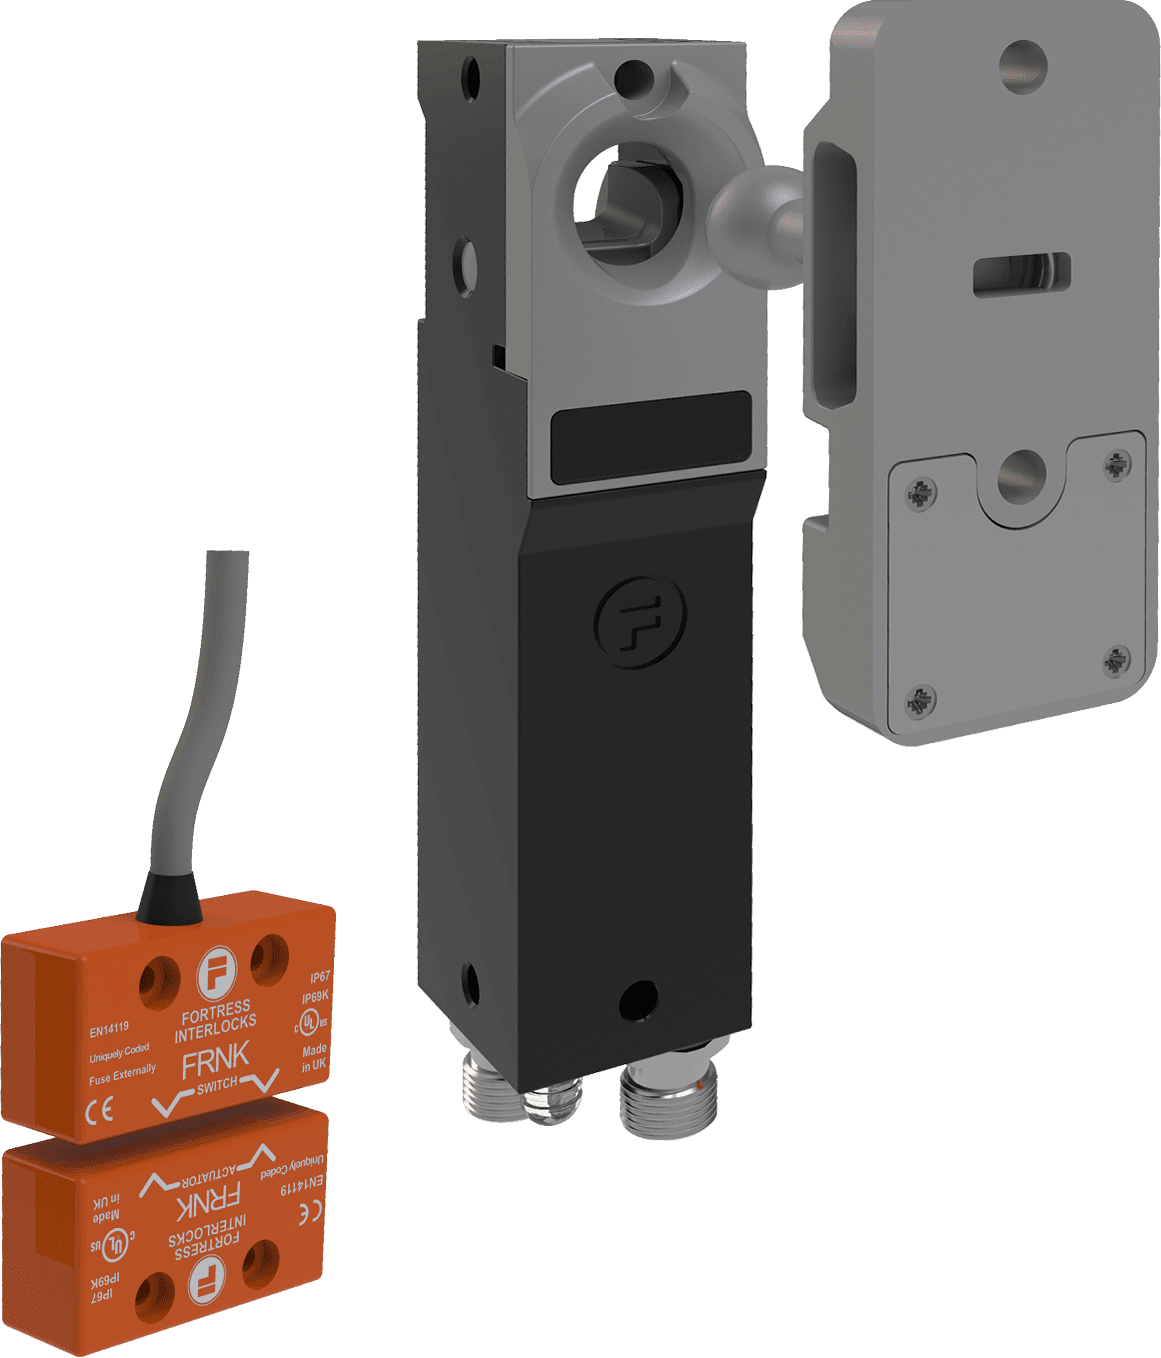 högkodat icke-kontakt interlock och en kompakt Fortress Atom med RFID kodning och skyddslåsning